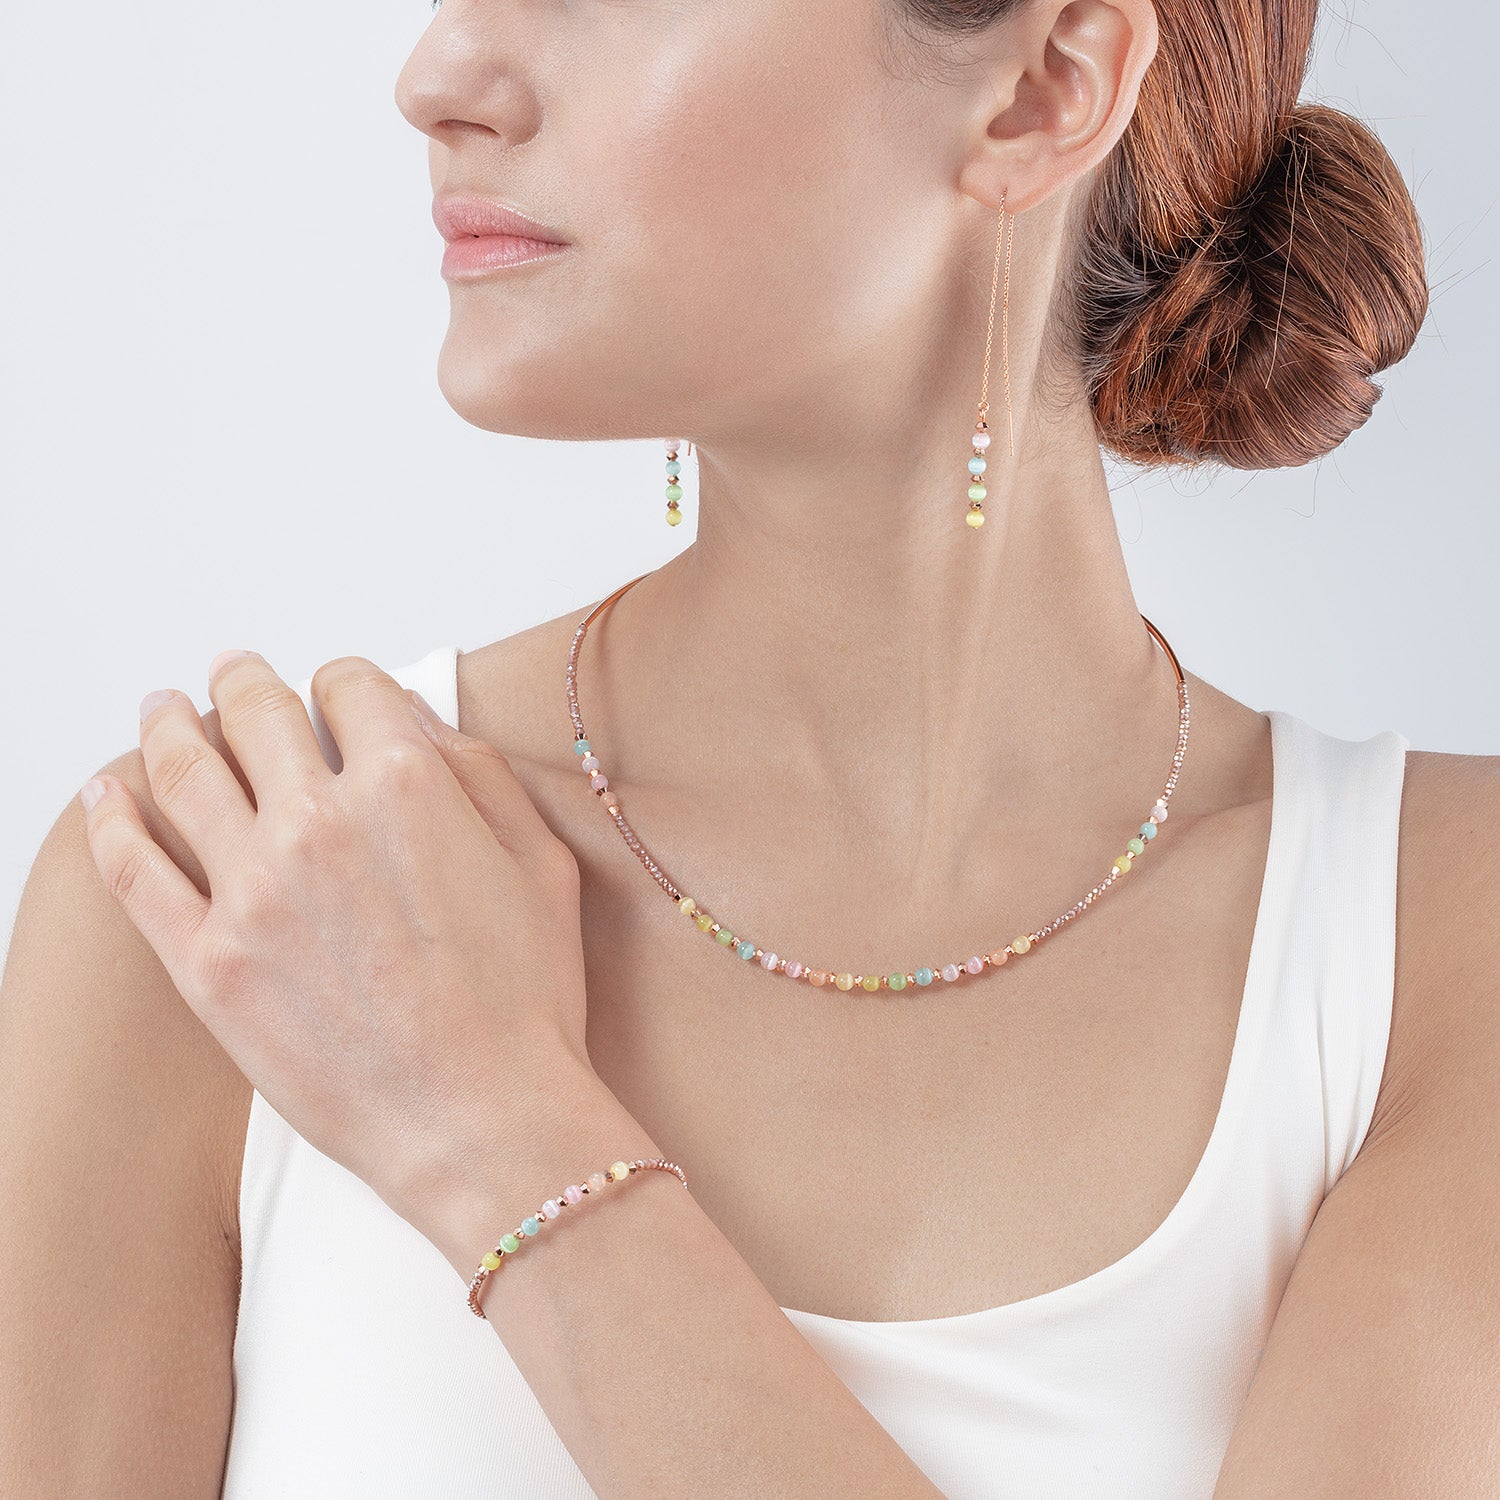 Princess candy necklace multicolour pastel